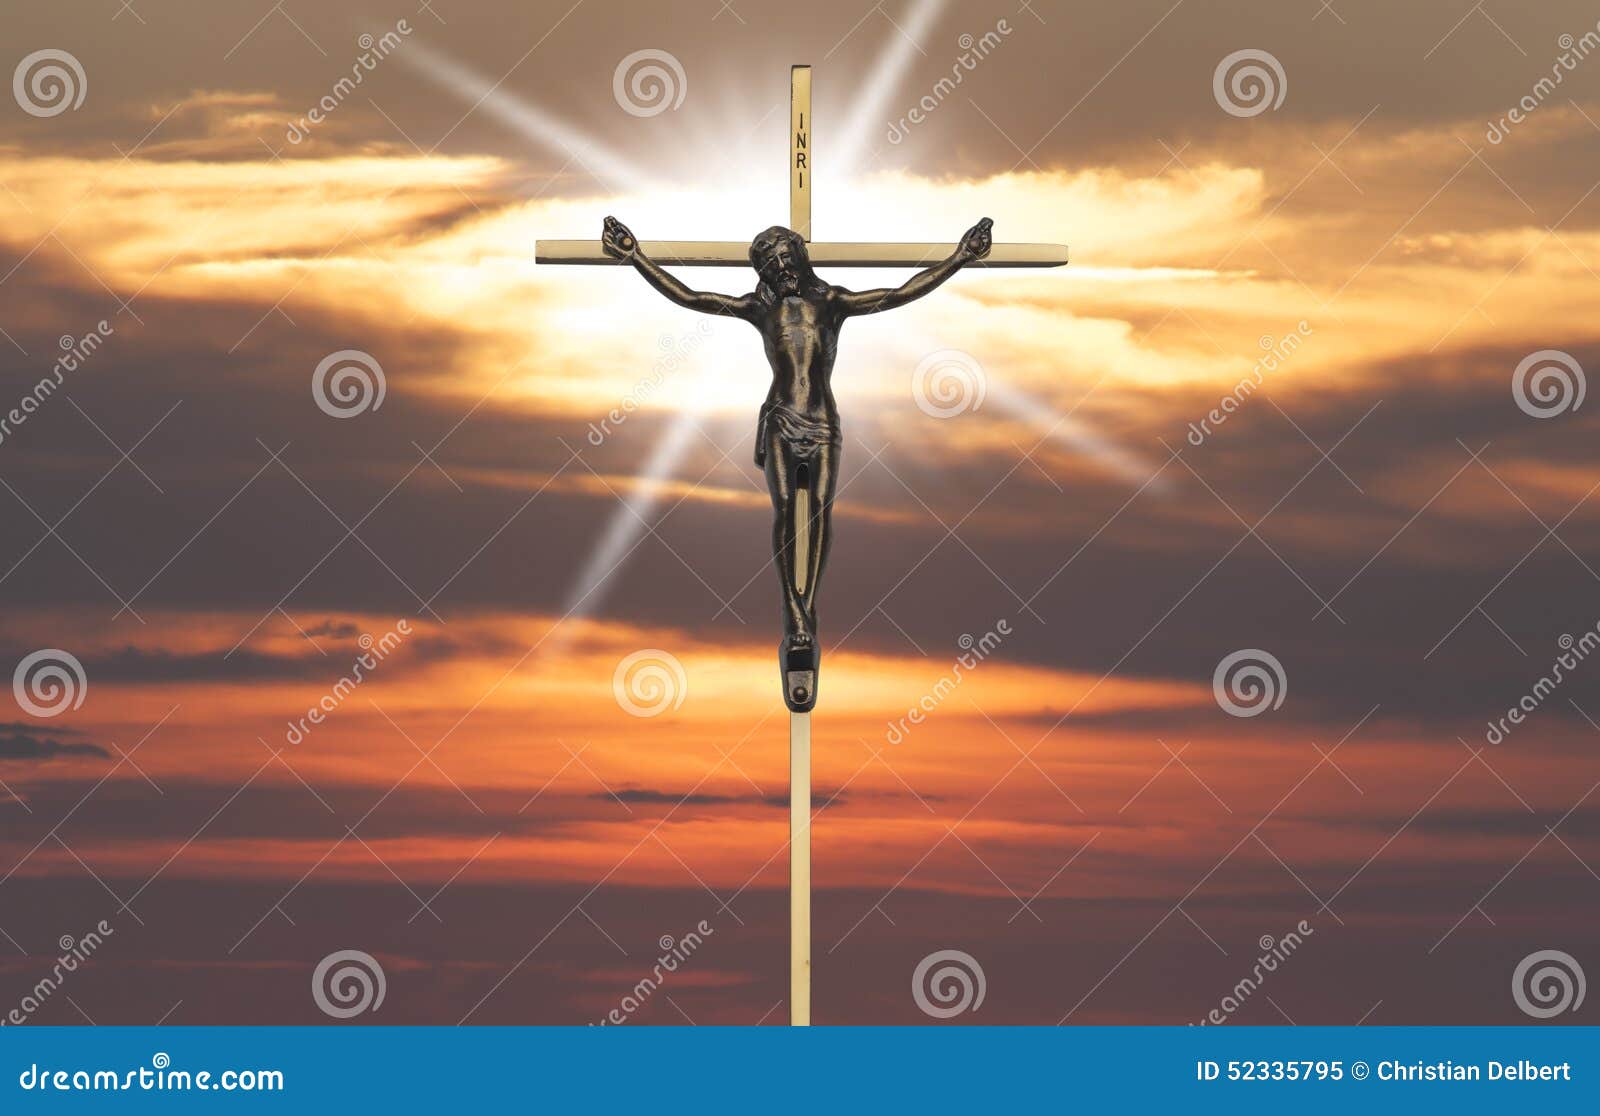 在十字架的耶稣基督激情由日落点燃了